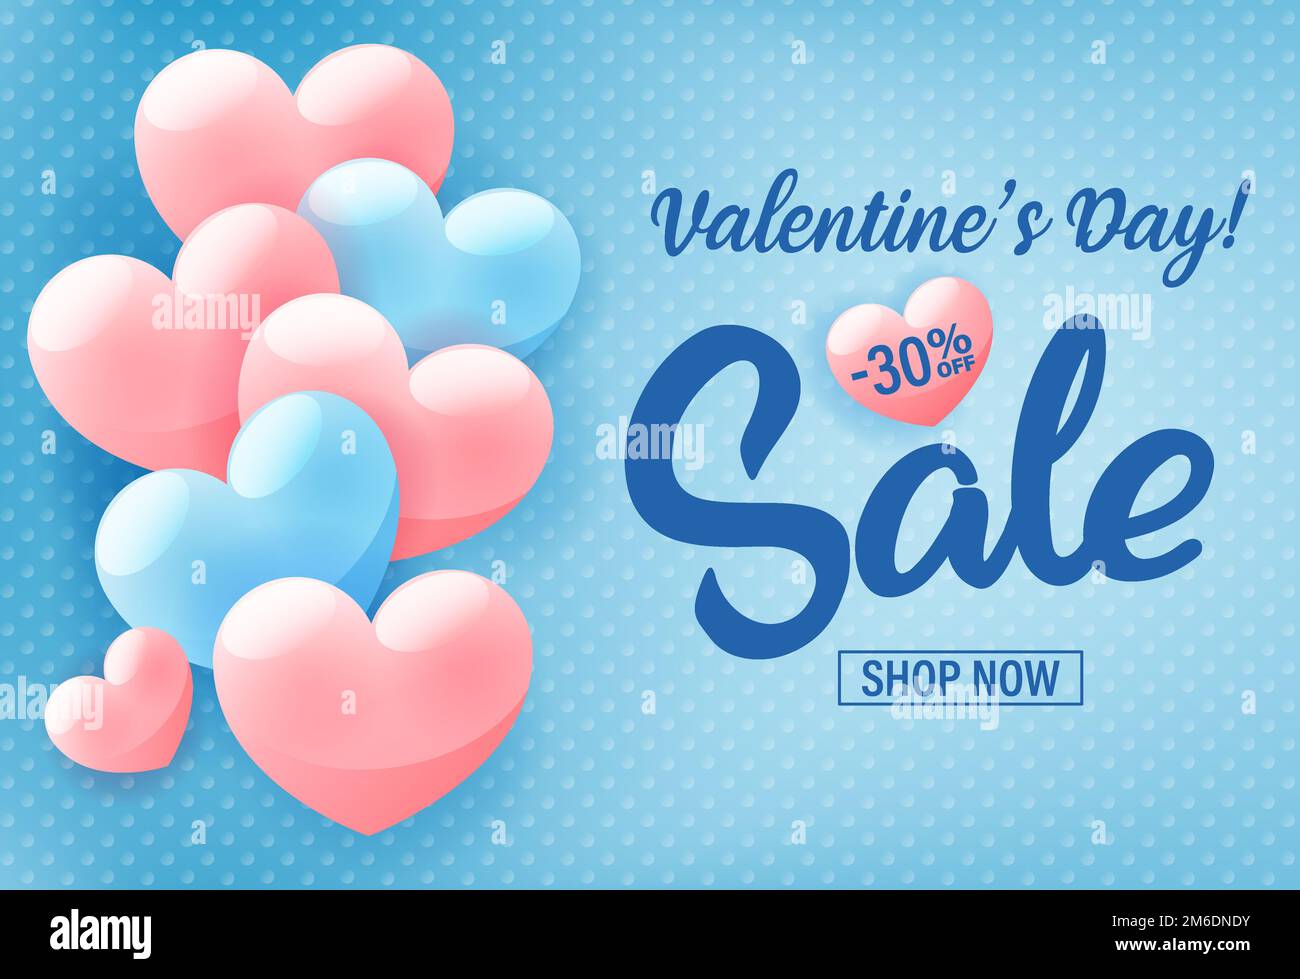 Einladungsposter zum Valentinstag-Shopping, Werbebanner mit pinkfarbenen Herzen auf blauem Hintergrund, Vektordarstellung. Stockfoto